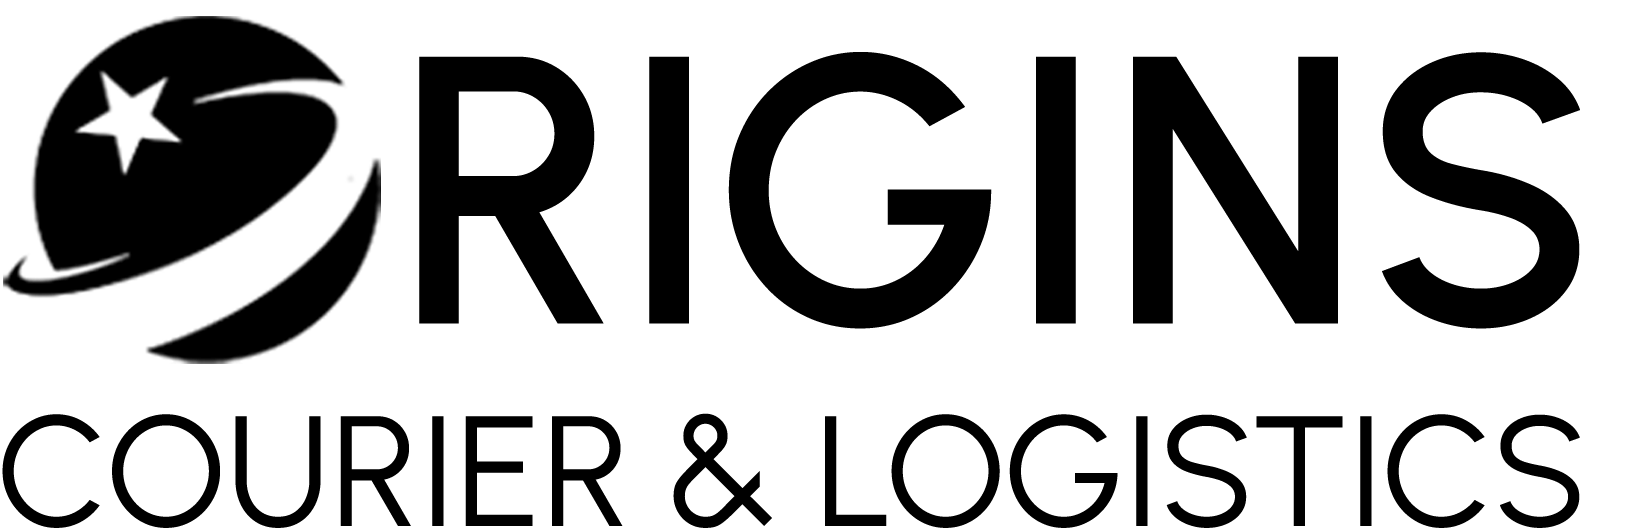 origins-logo